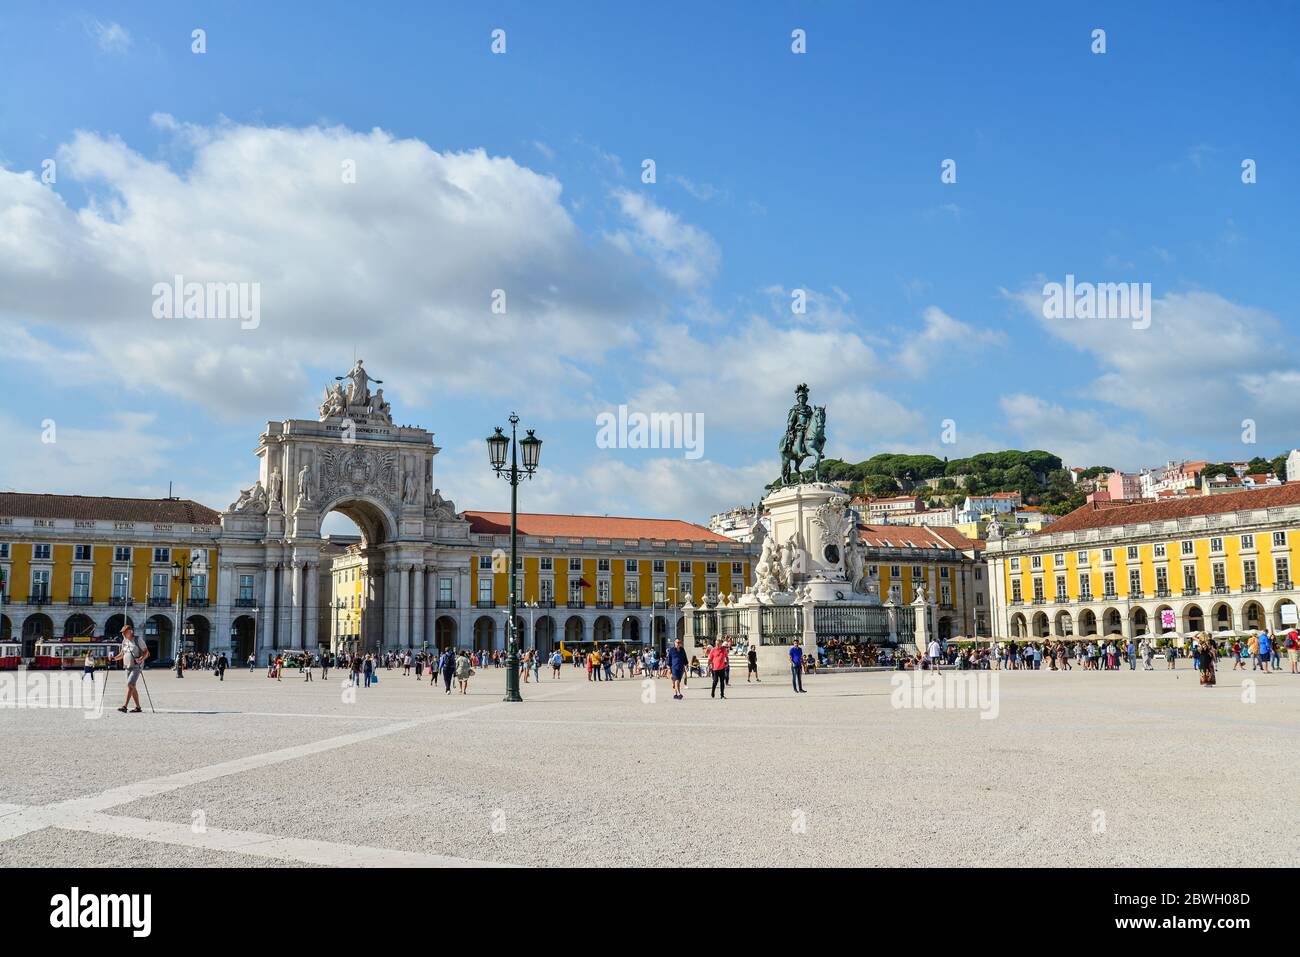 LISBONA, PORTOGALLO - 2 LUGLIO 2019: Piazza del Commercio a Lisbona. E' una delle piazze più importanti e fu sistemata la terra dove il Palazzo reale i Foto Stock